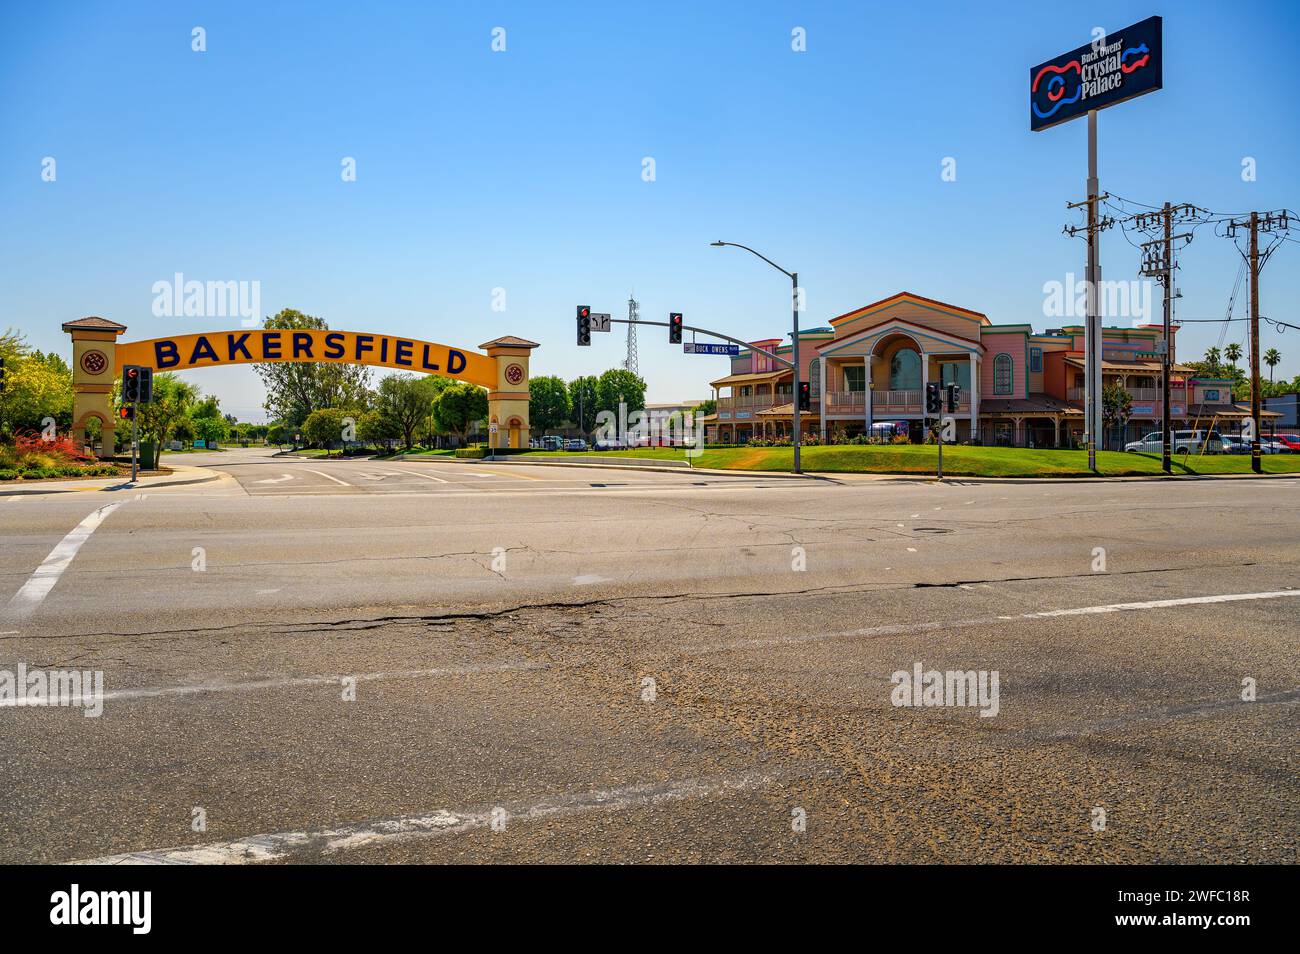 L'arco di Bakersfield si affaccia sulla strada in una giornata di sole con cieli limpidi Foto Stock